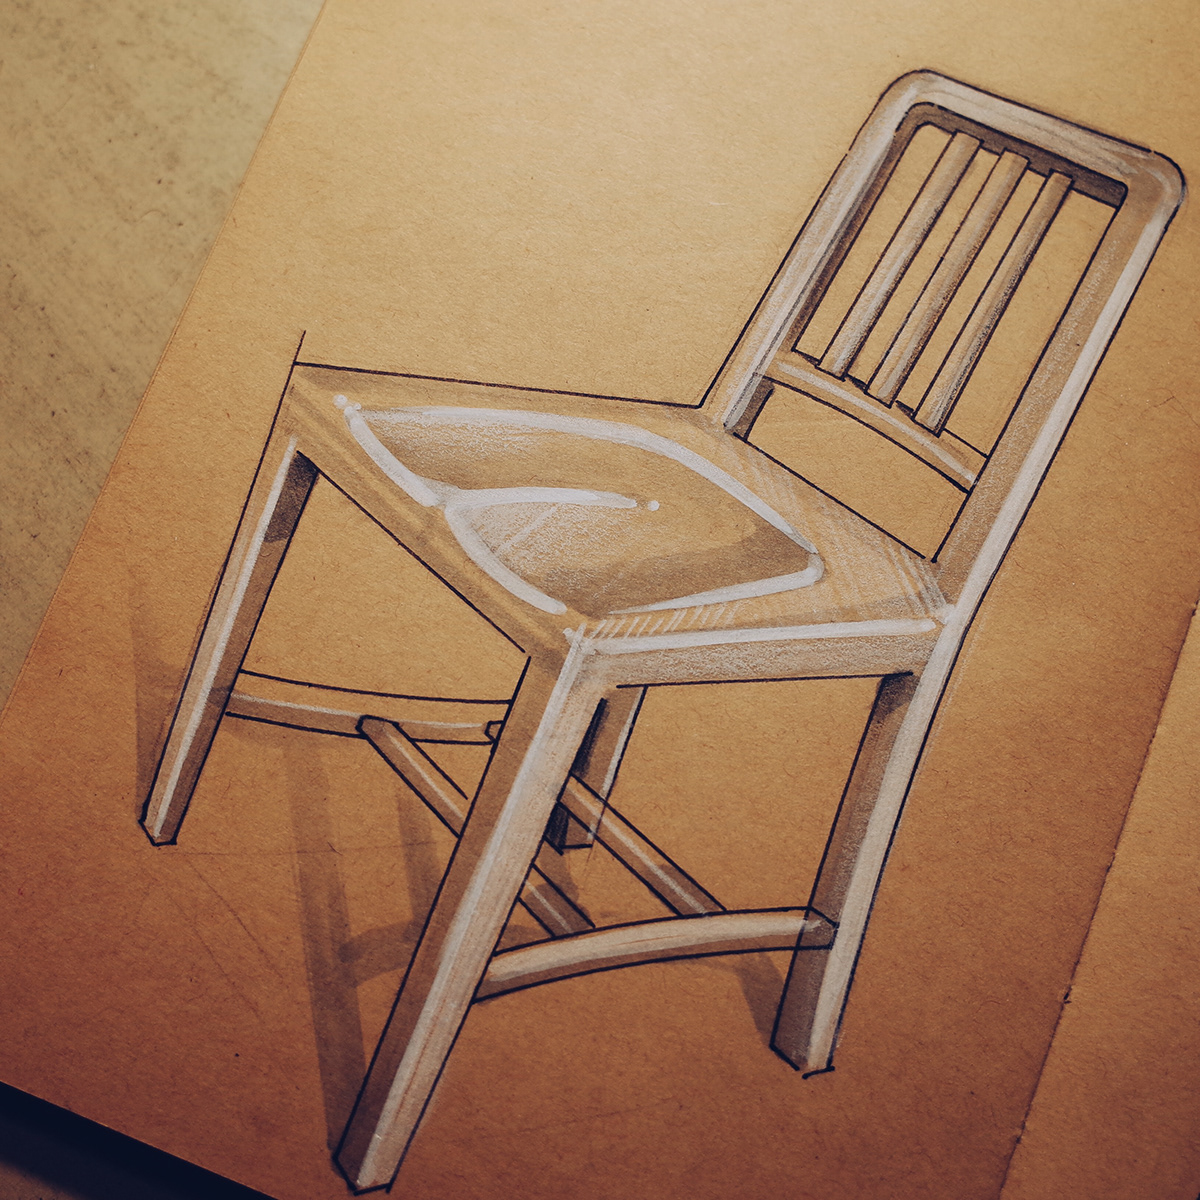 industrialdesign productdesign productsketch rendering sketchbook designsketch Drawing  idsketch sketch sketching